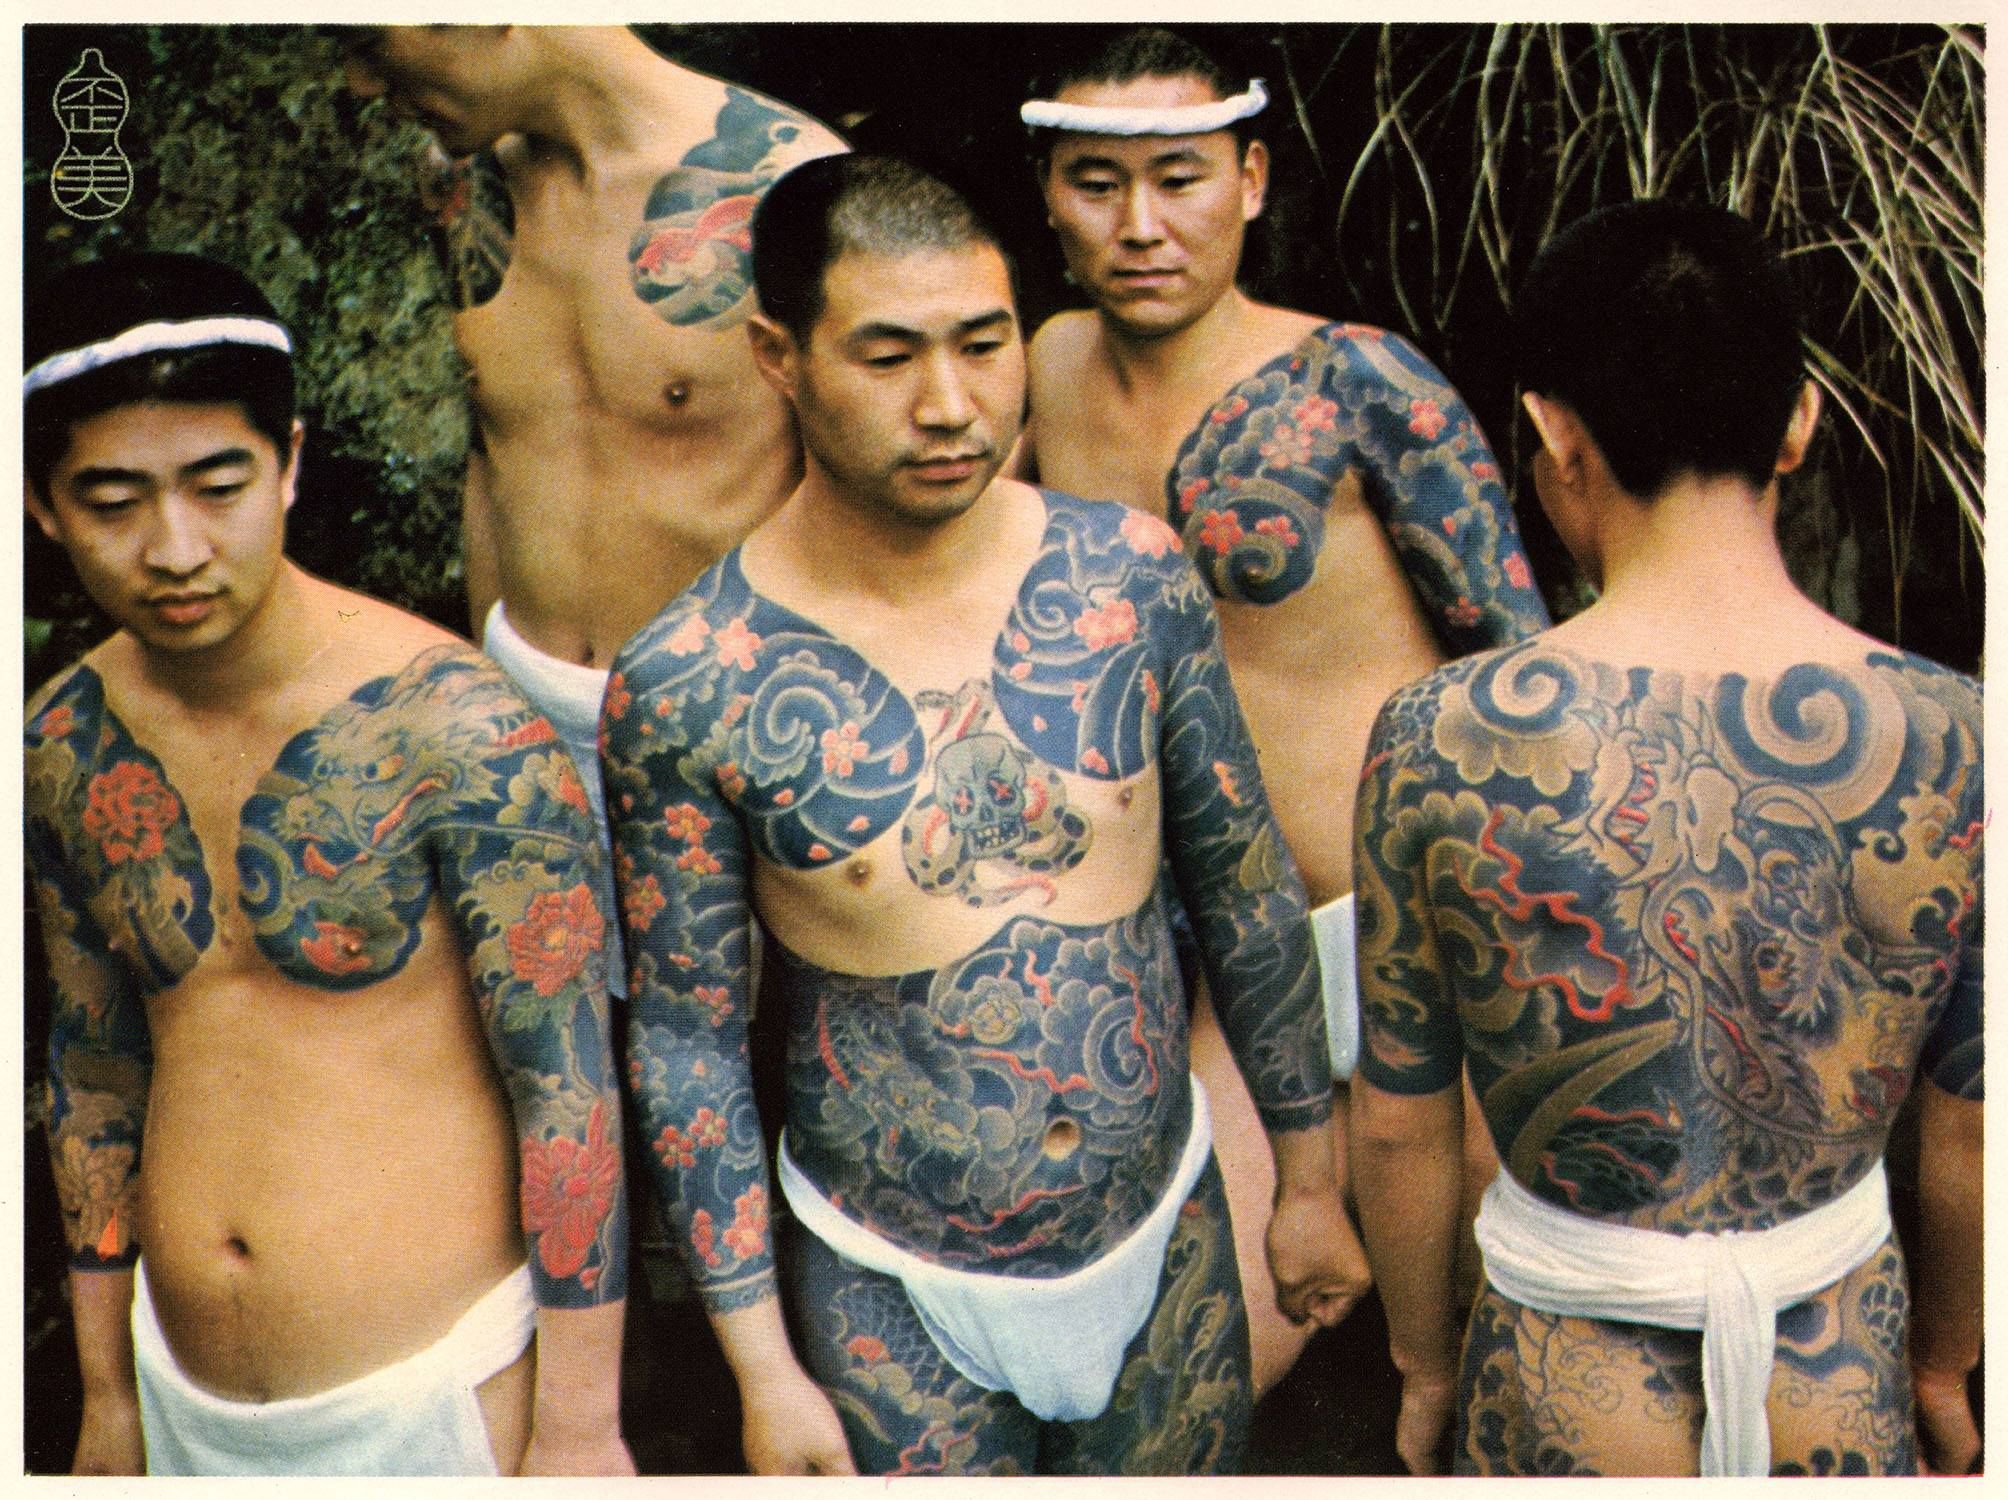 Tattoos in Yakuza culture